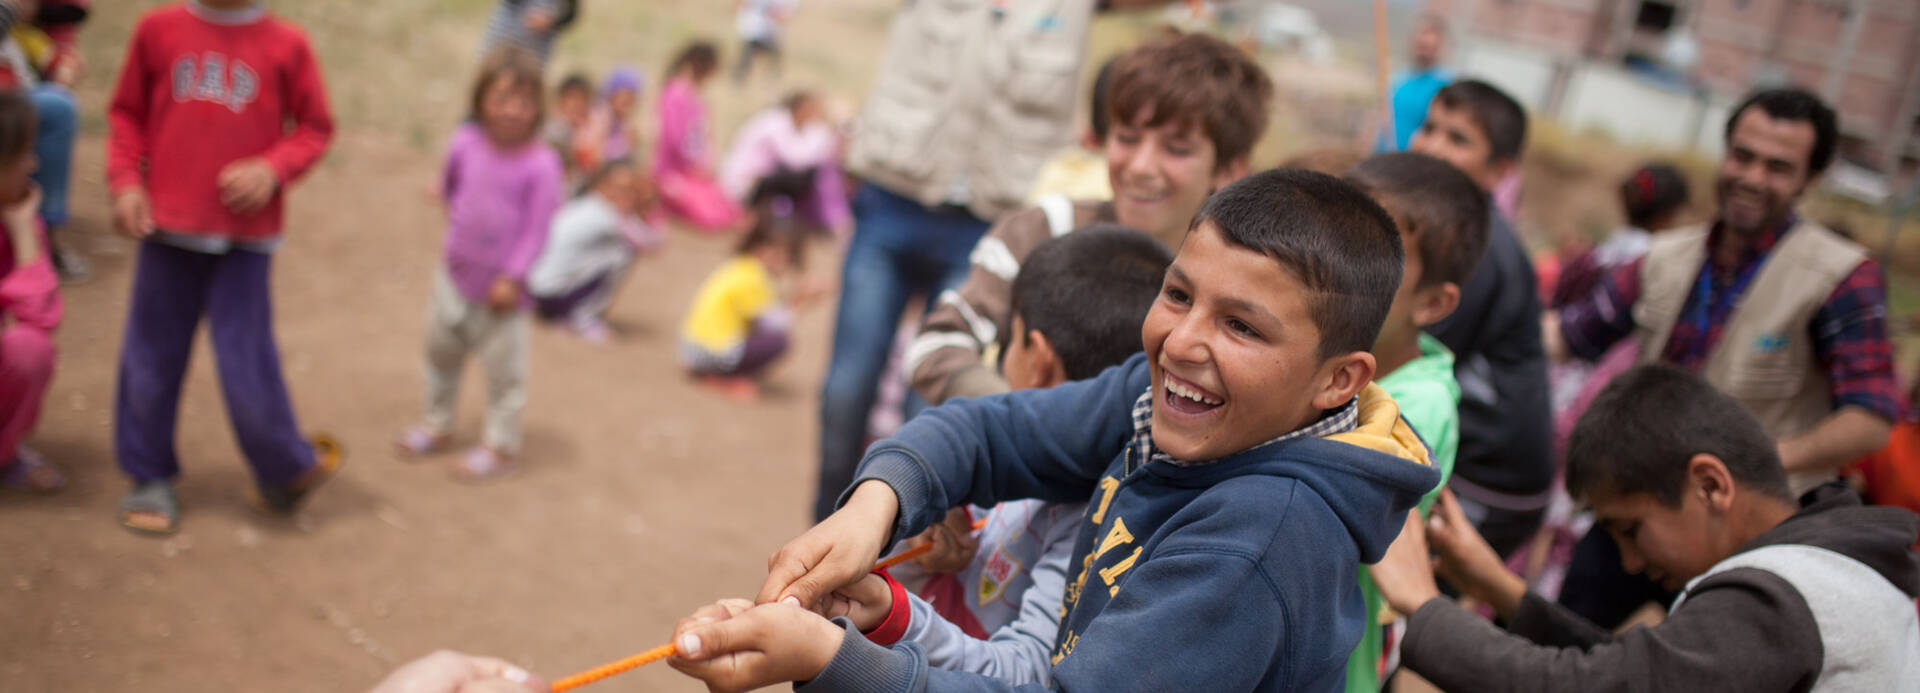 Kinder im Irak spielen Tauziehen